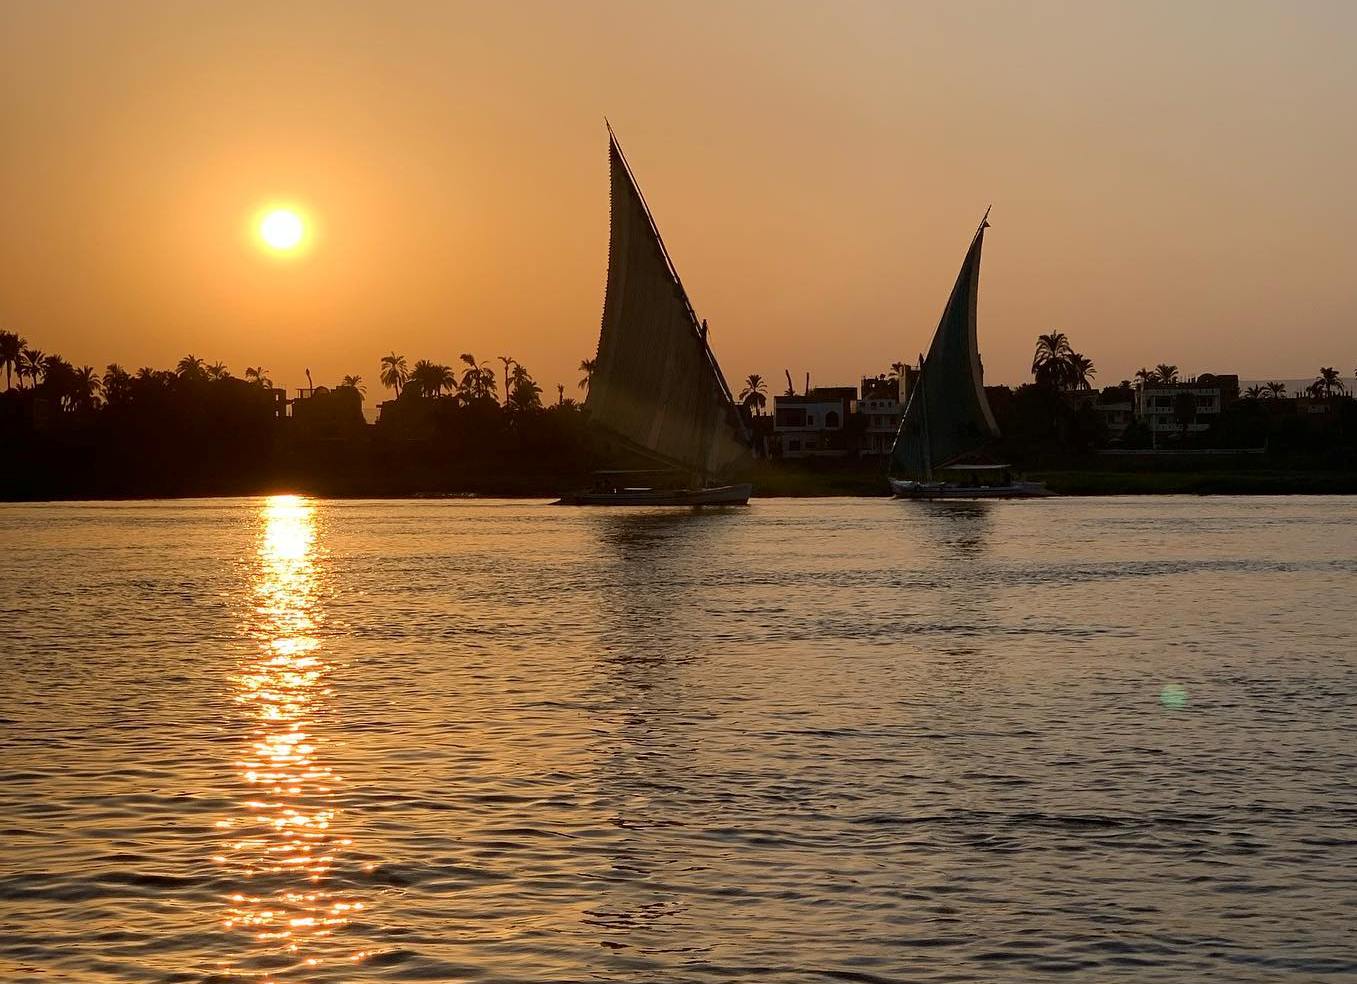 نهر النيل مصدر بهجة سياح العالم خلال زيارتهم للأقصر